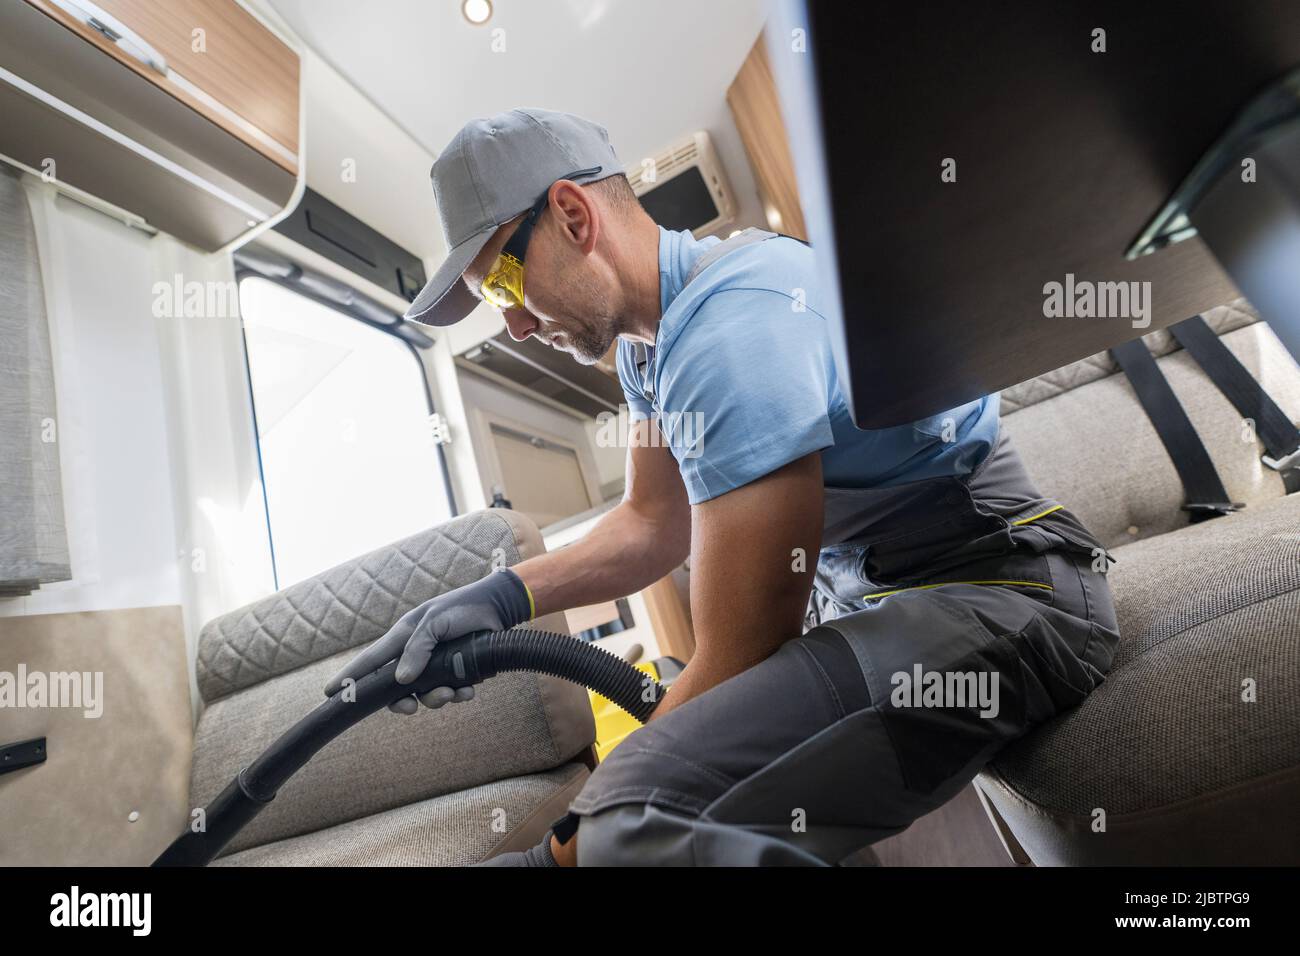 Männlicher Arbeiter in seinem 40s Reinigung der Sofa-Bett-Couch in einem Wohnmobil Fahrzeug mit einem Staubsauger. Pflege und Pflege eines modernen und komfortablen Campers Stockfoto